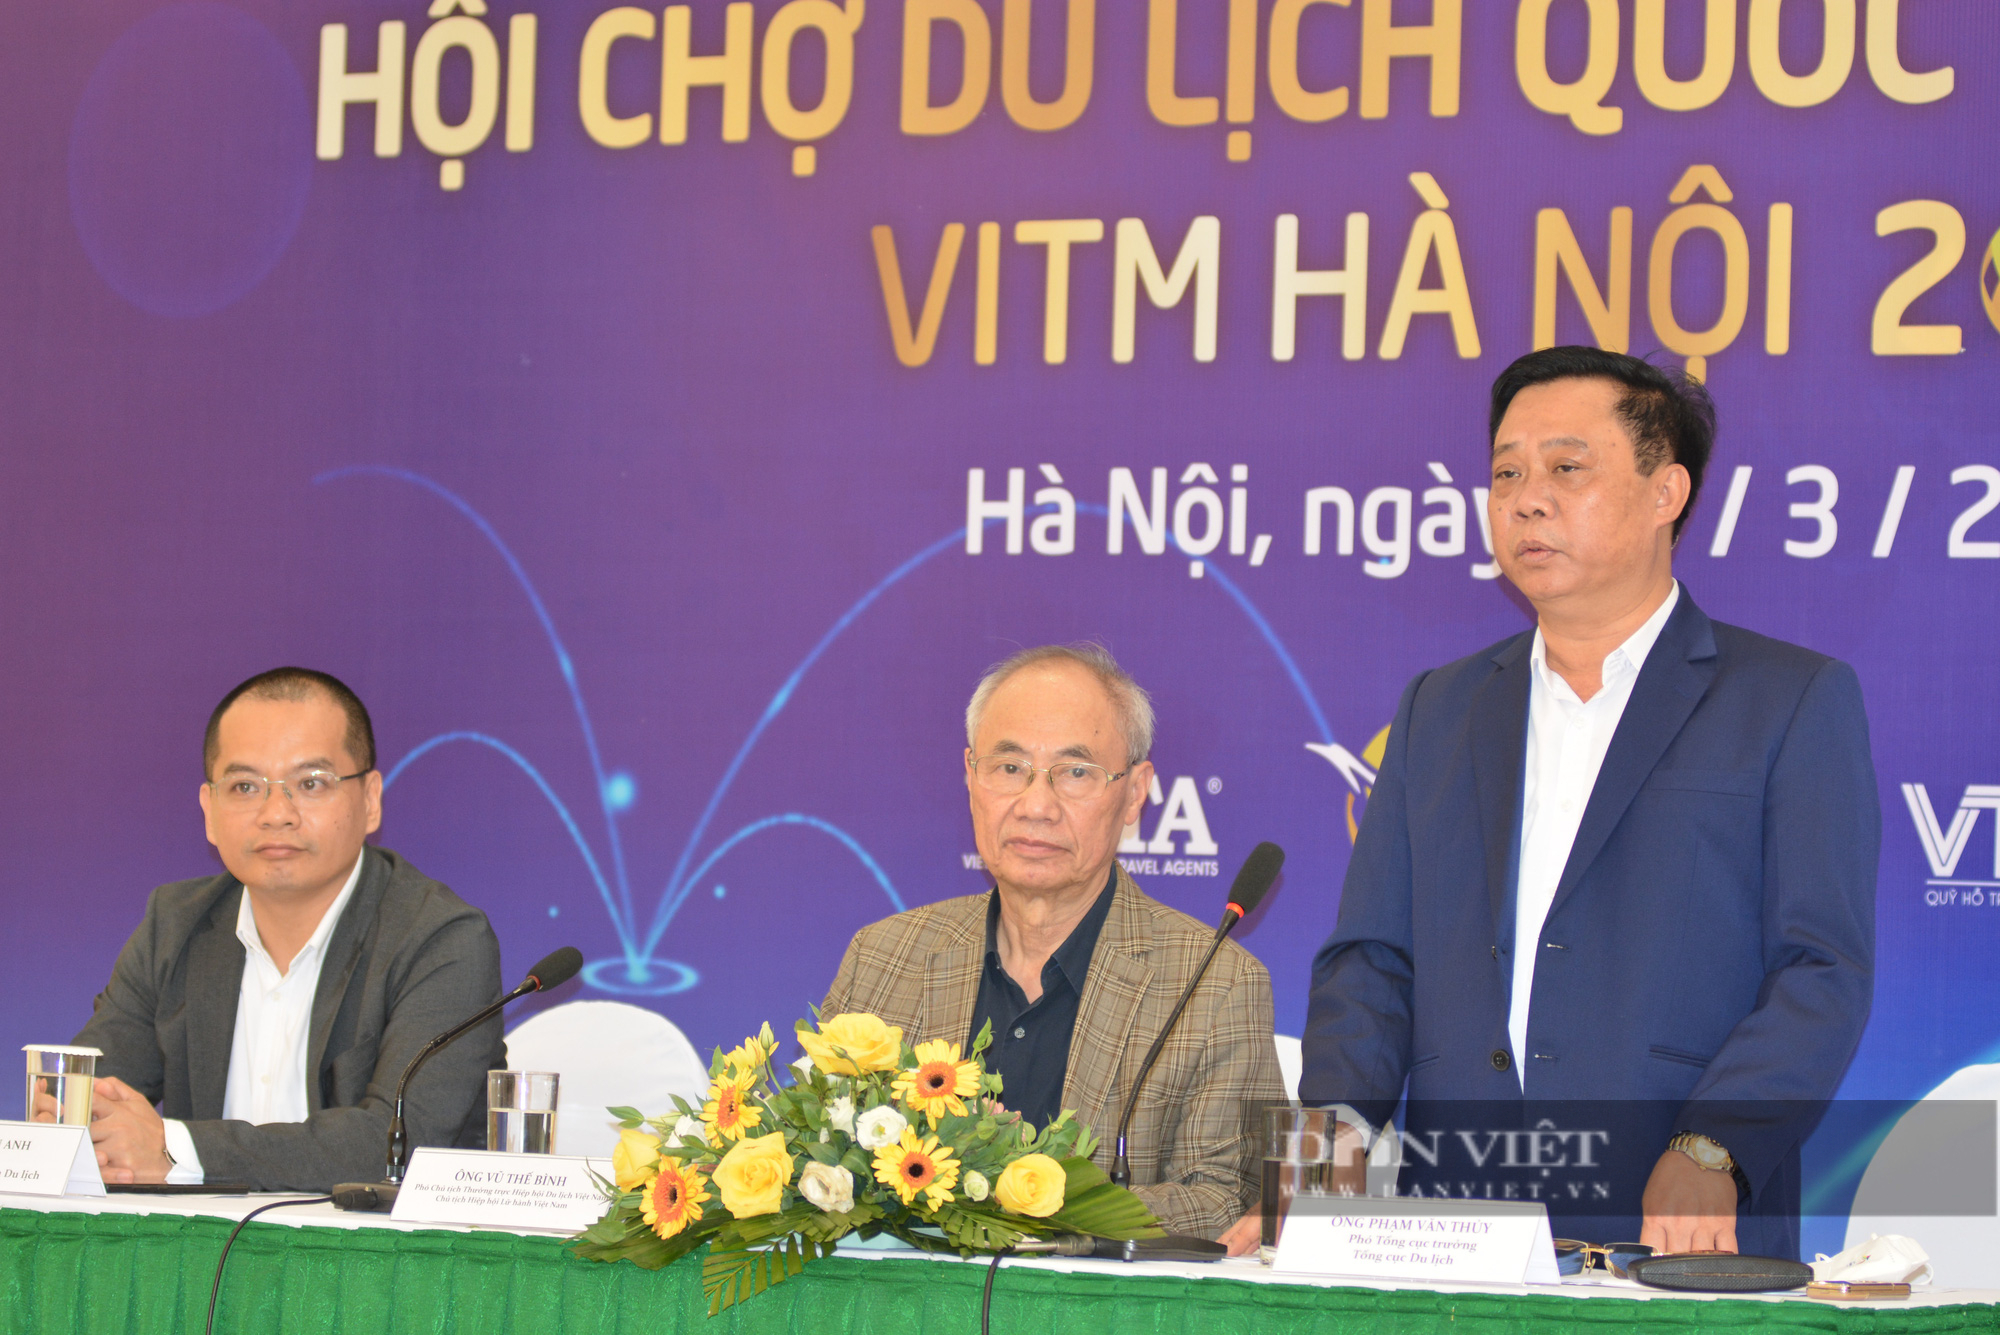 10.000 tour và 100.000 vé máy bay giá rẻ sẽ được mở bán tại Hội chợ Du lịch quốc tế Việt Nam 2022  - Ảnh 3.